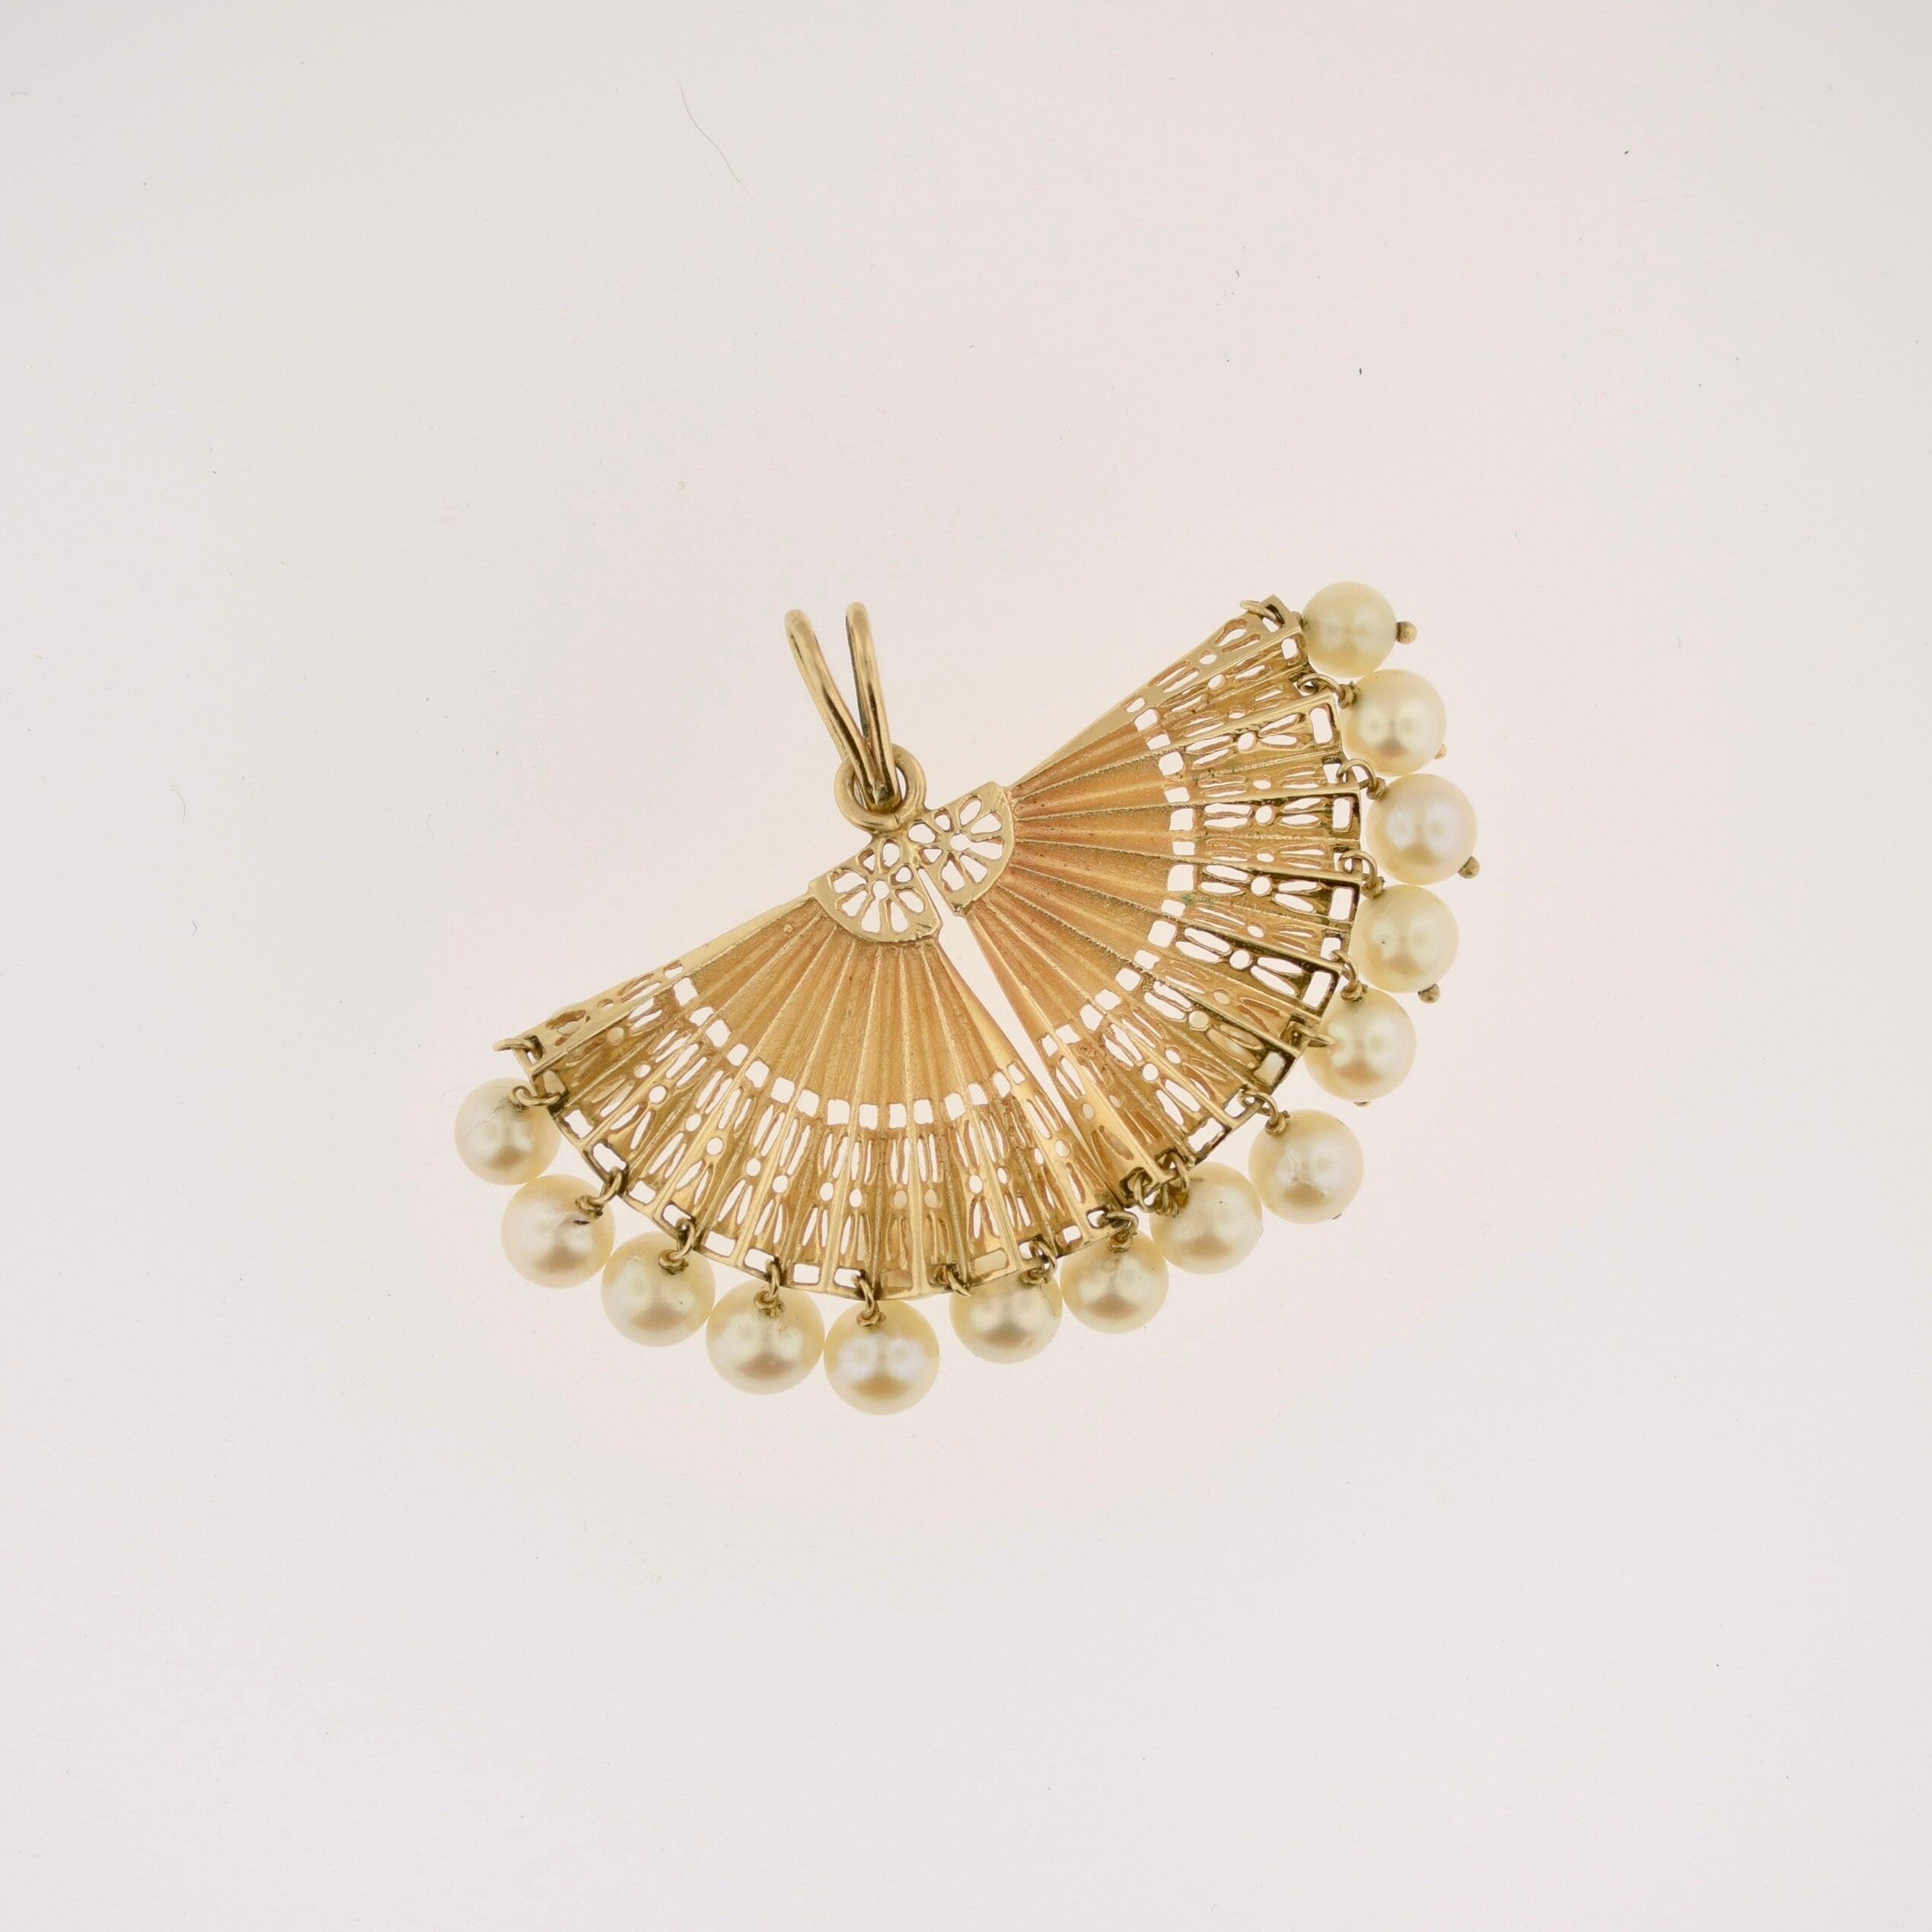 Vintage 14k Gold Pearl Fan Pendant - Great Size!